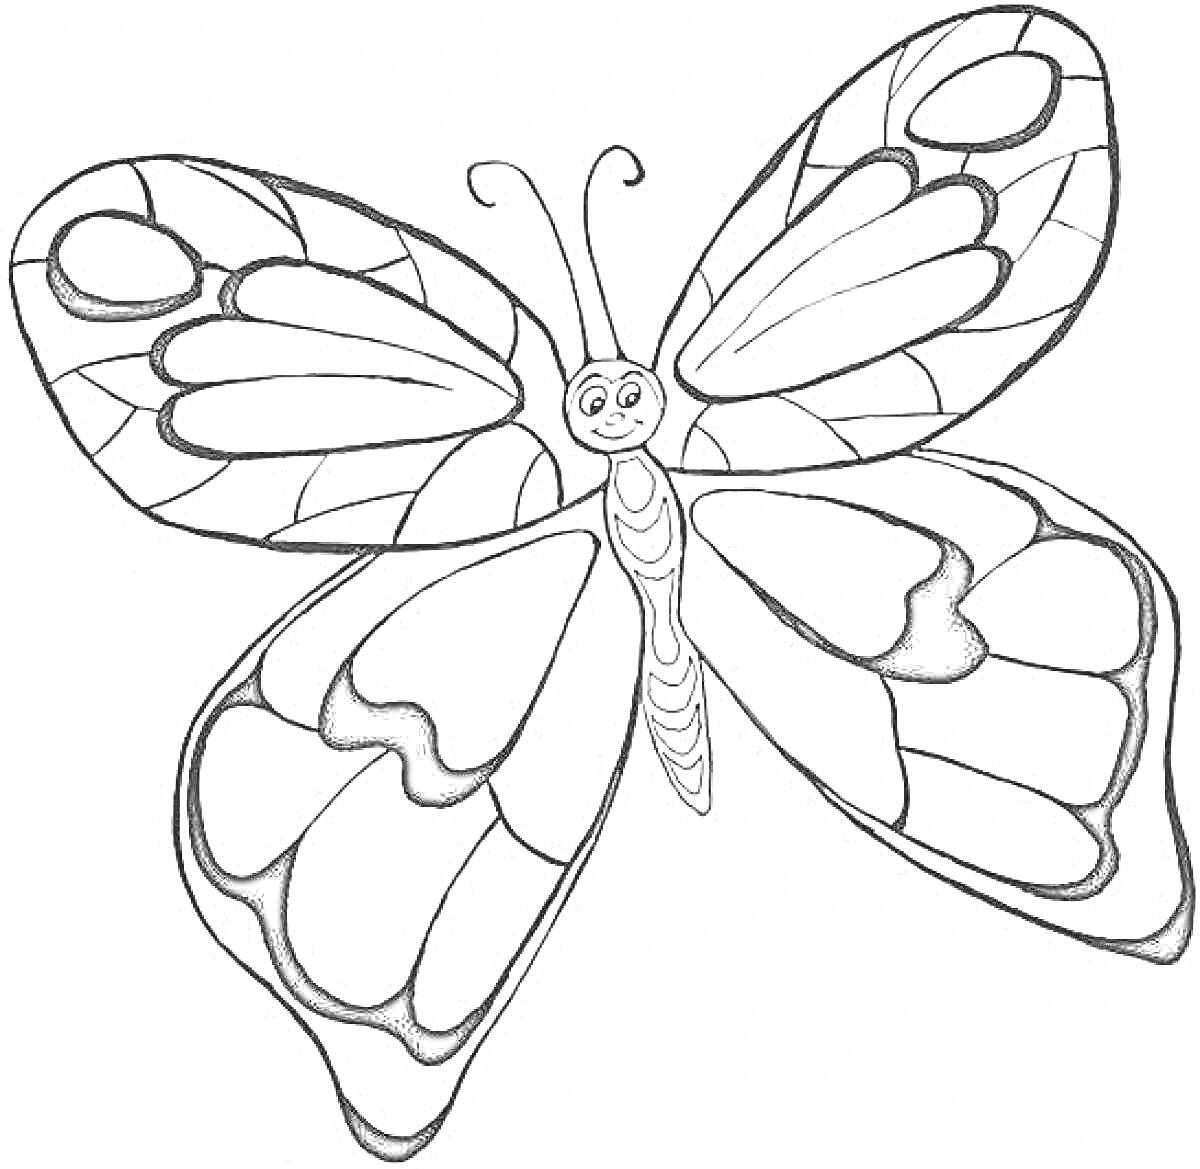 Раскраска Бабочка с крупными узорными крыльями и улыбающимся лицом